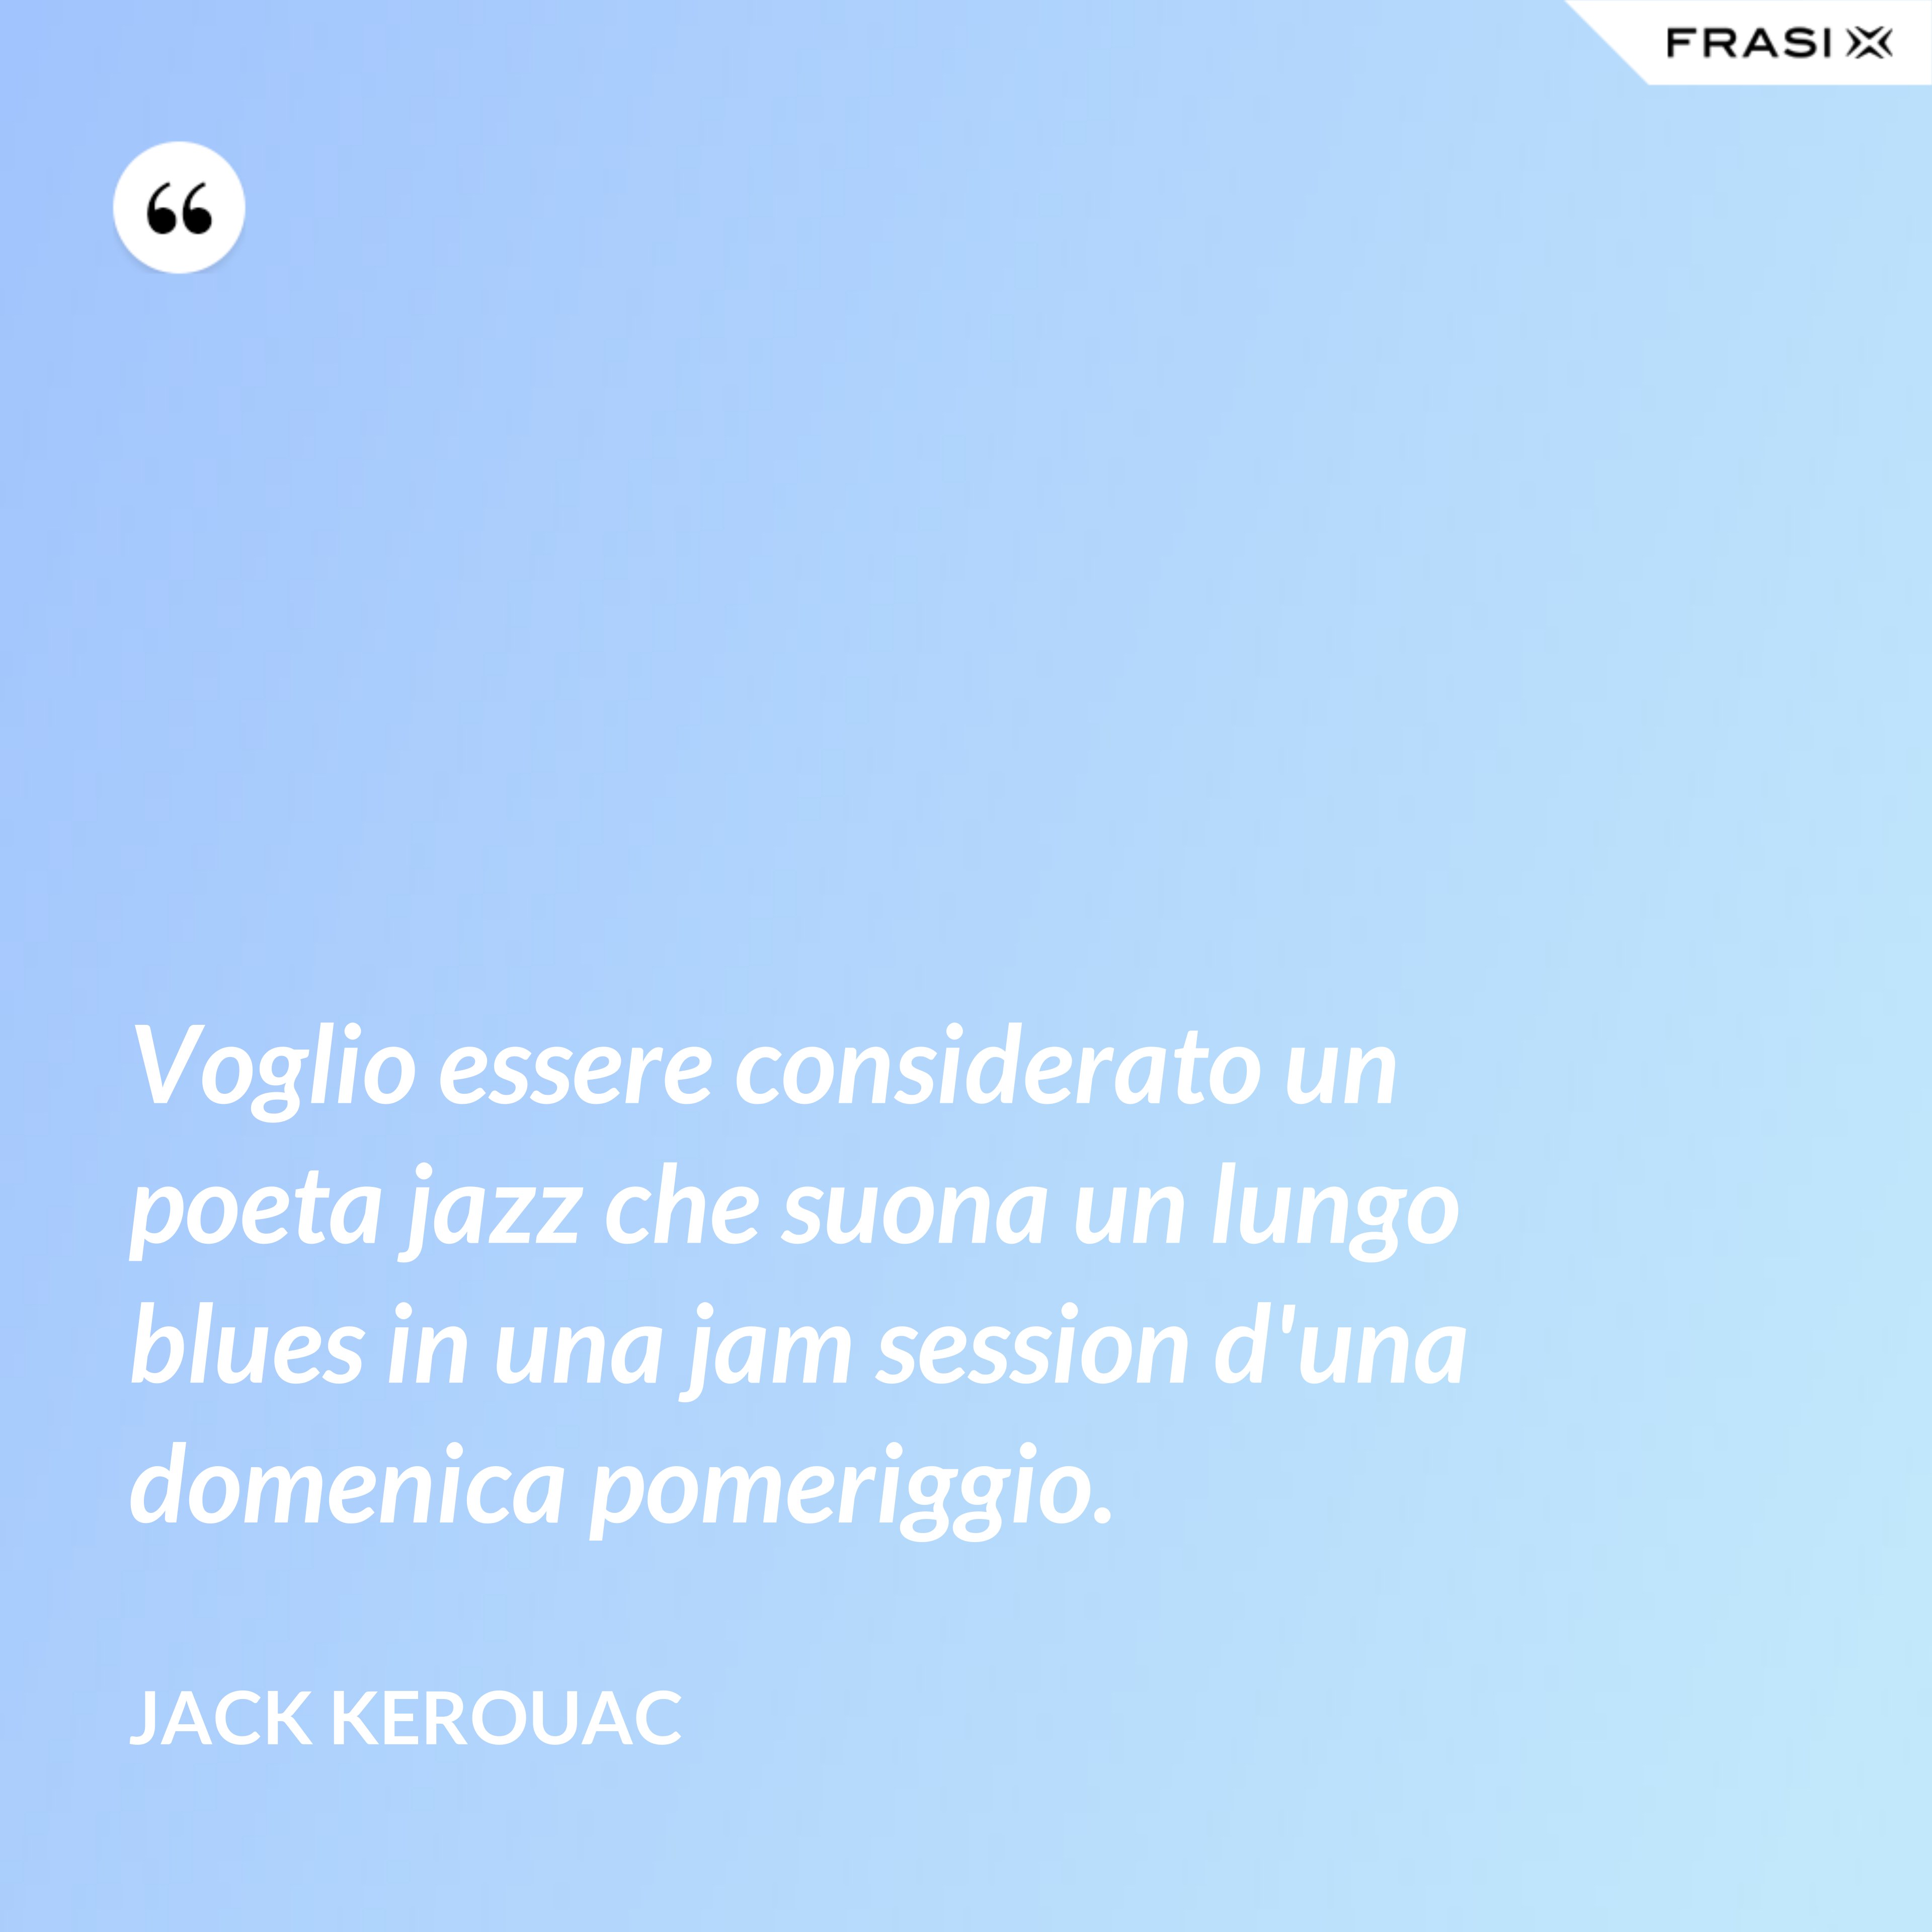 Voglio essere considerato un poeta jazz che suona un lungo blues in una jam session d'una domenica pomeriggio. - Jack Kerouac